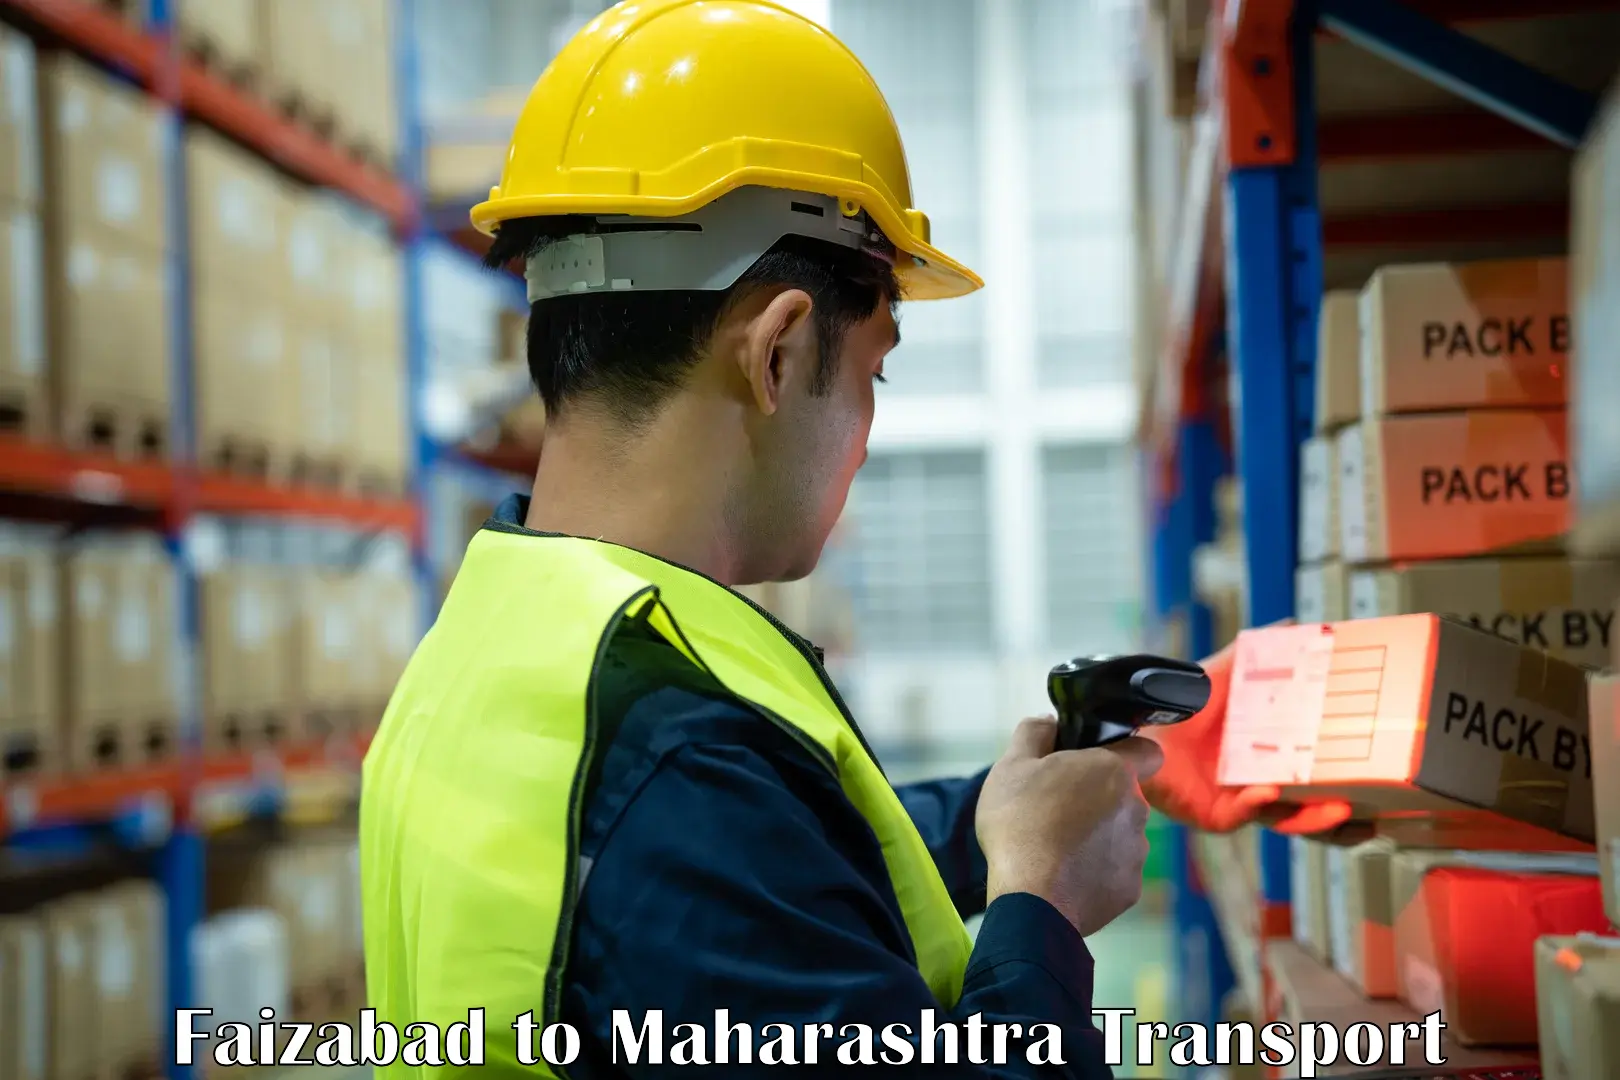 Container transportation services Faizabad to Raigarh Maharashtra